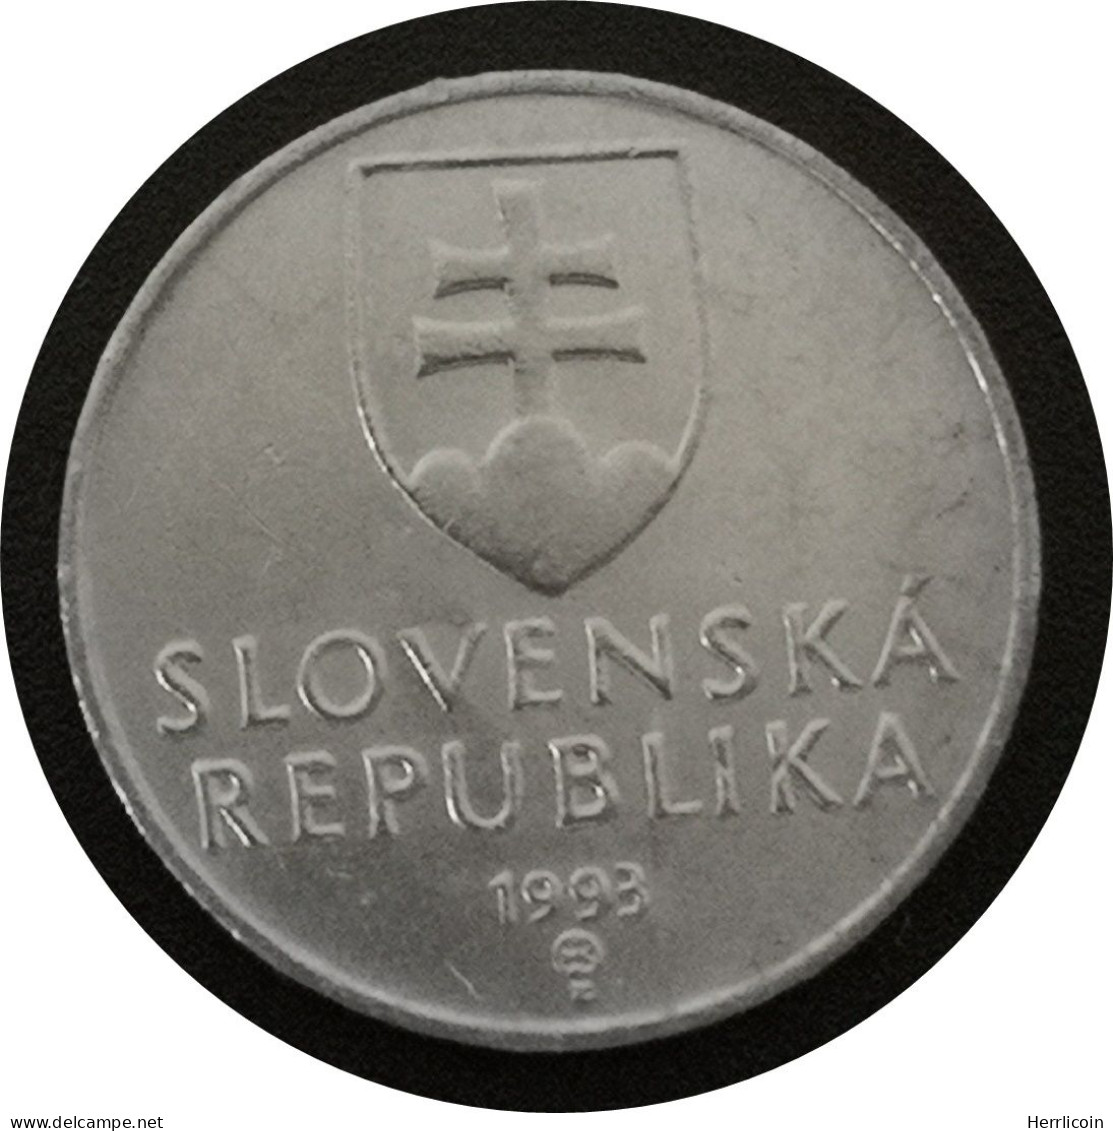 Monnaie Slovaquie - 1993 - 10 Halierov - Slovakia